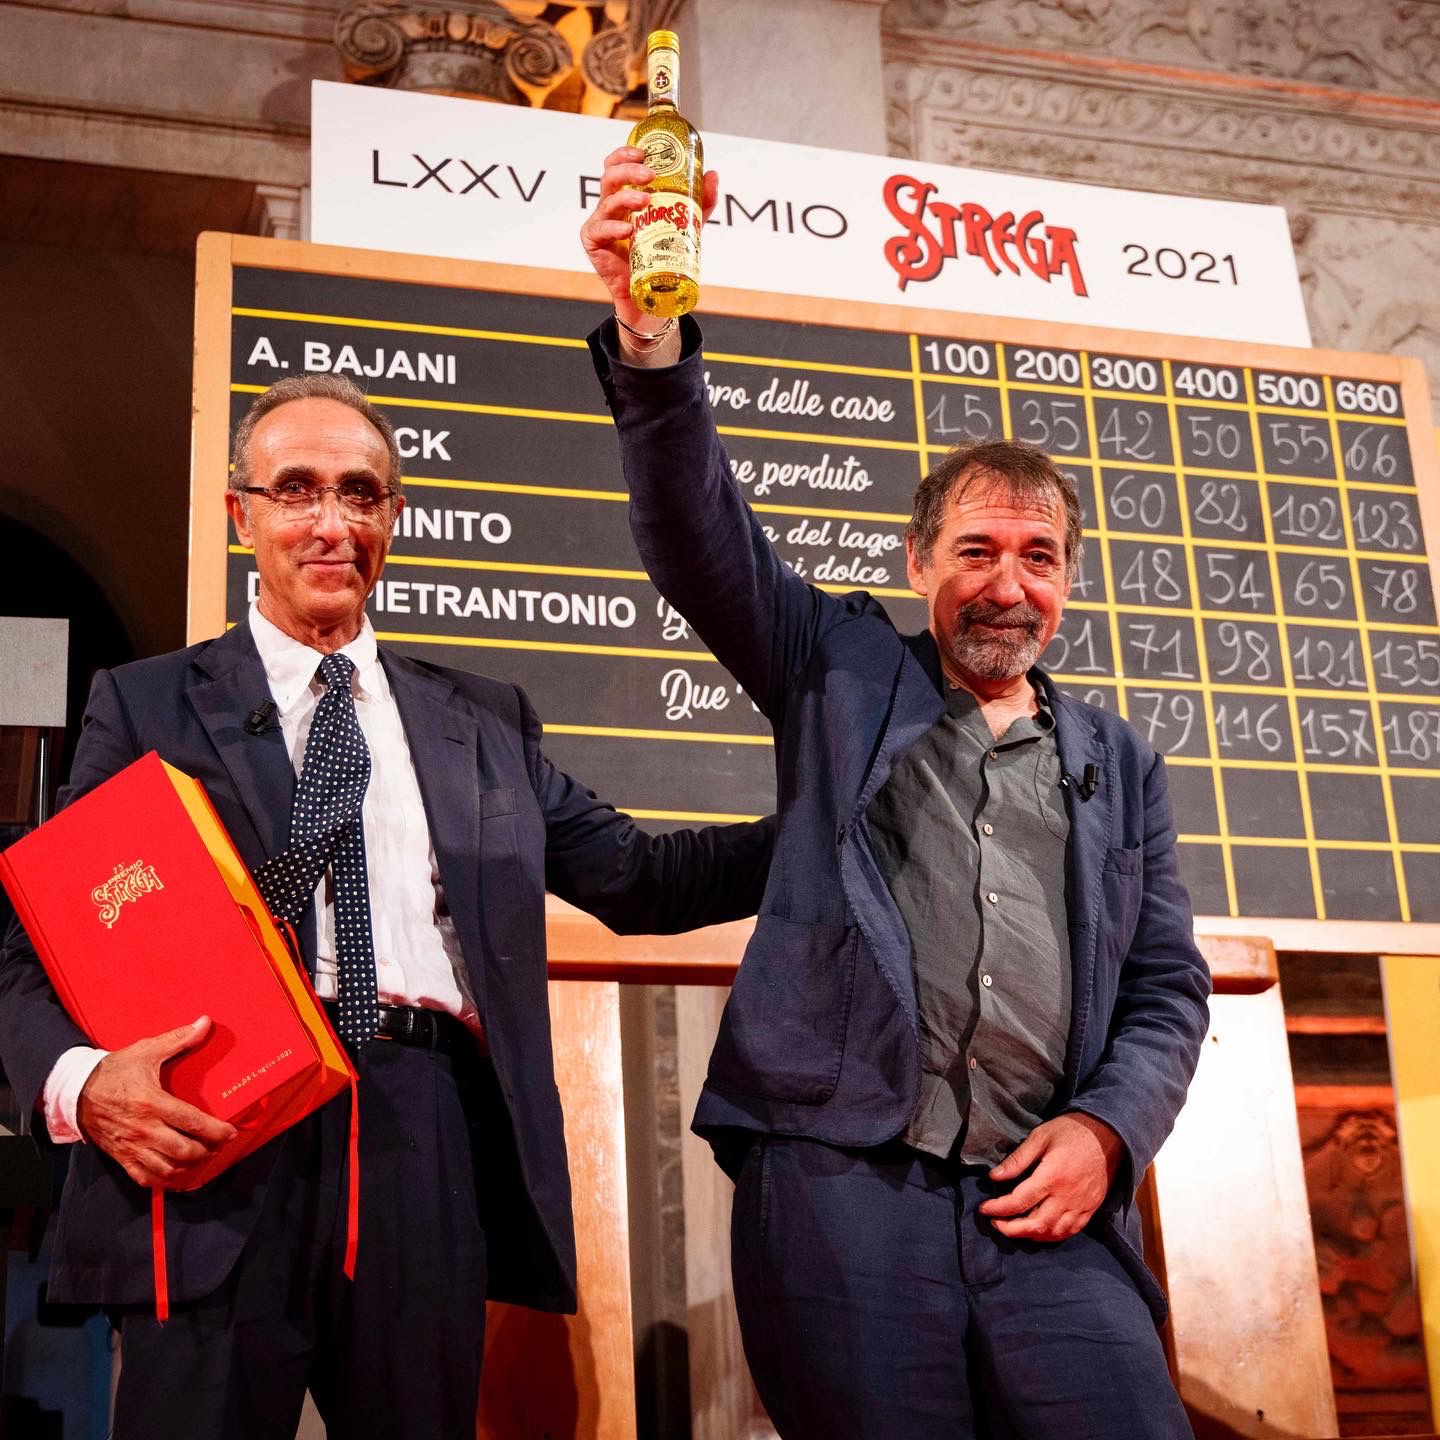 Emanuele Trevi vince il Premio Strega 2021 con il romanzo “Due vite”